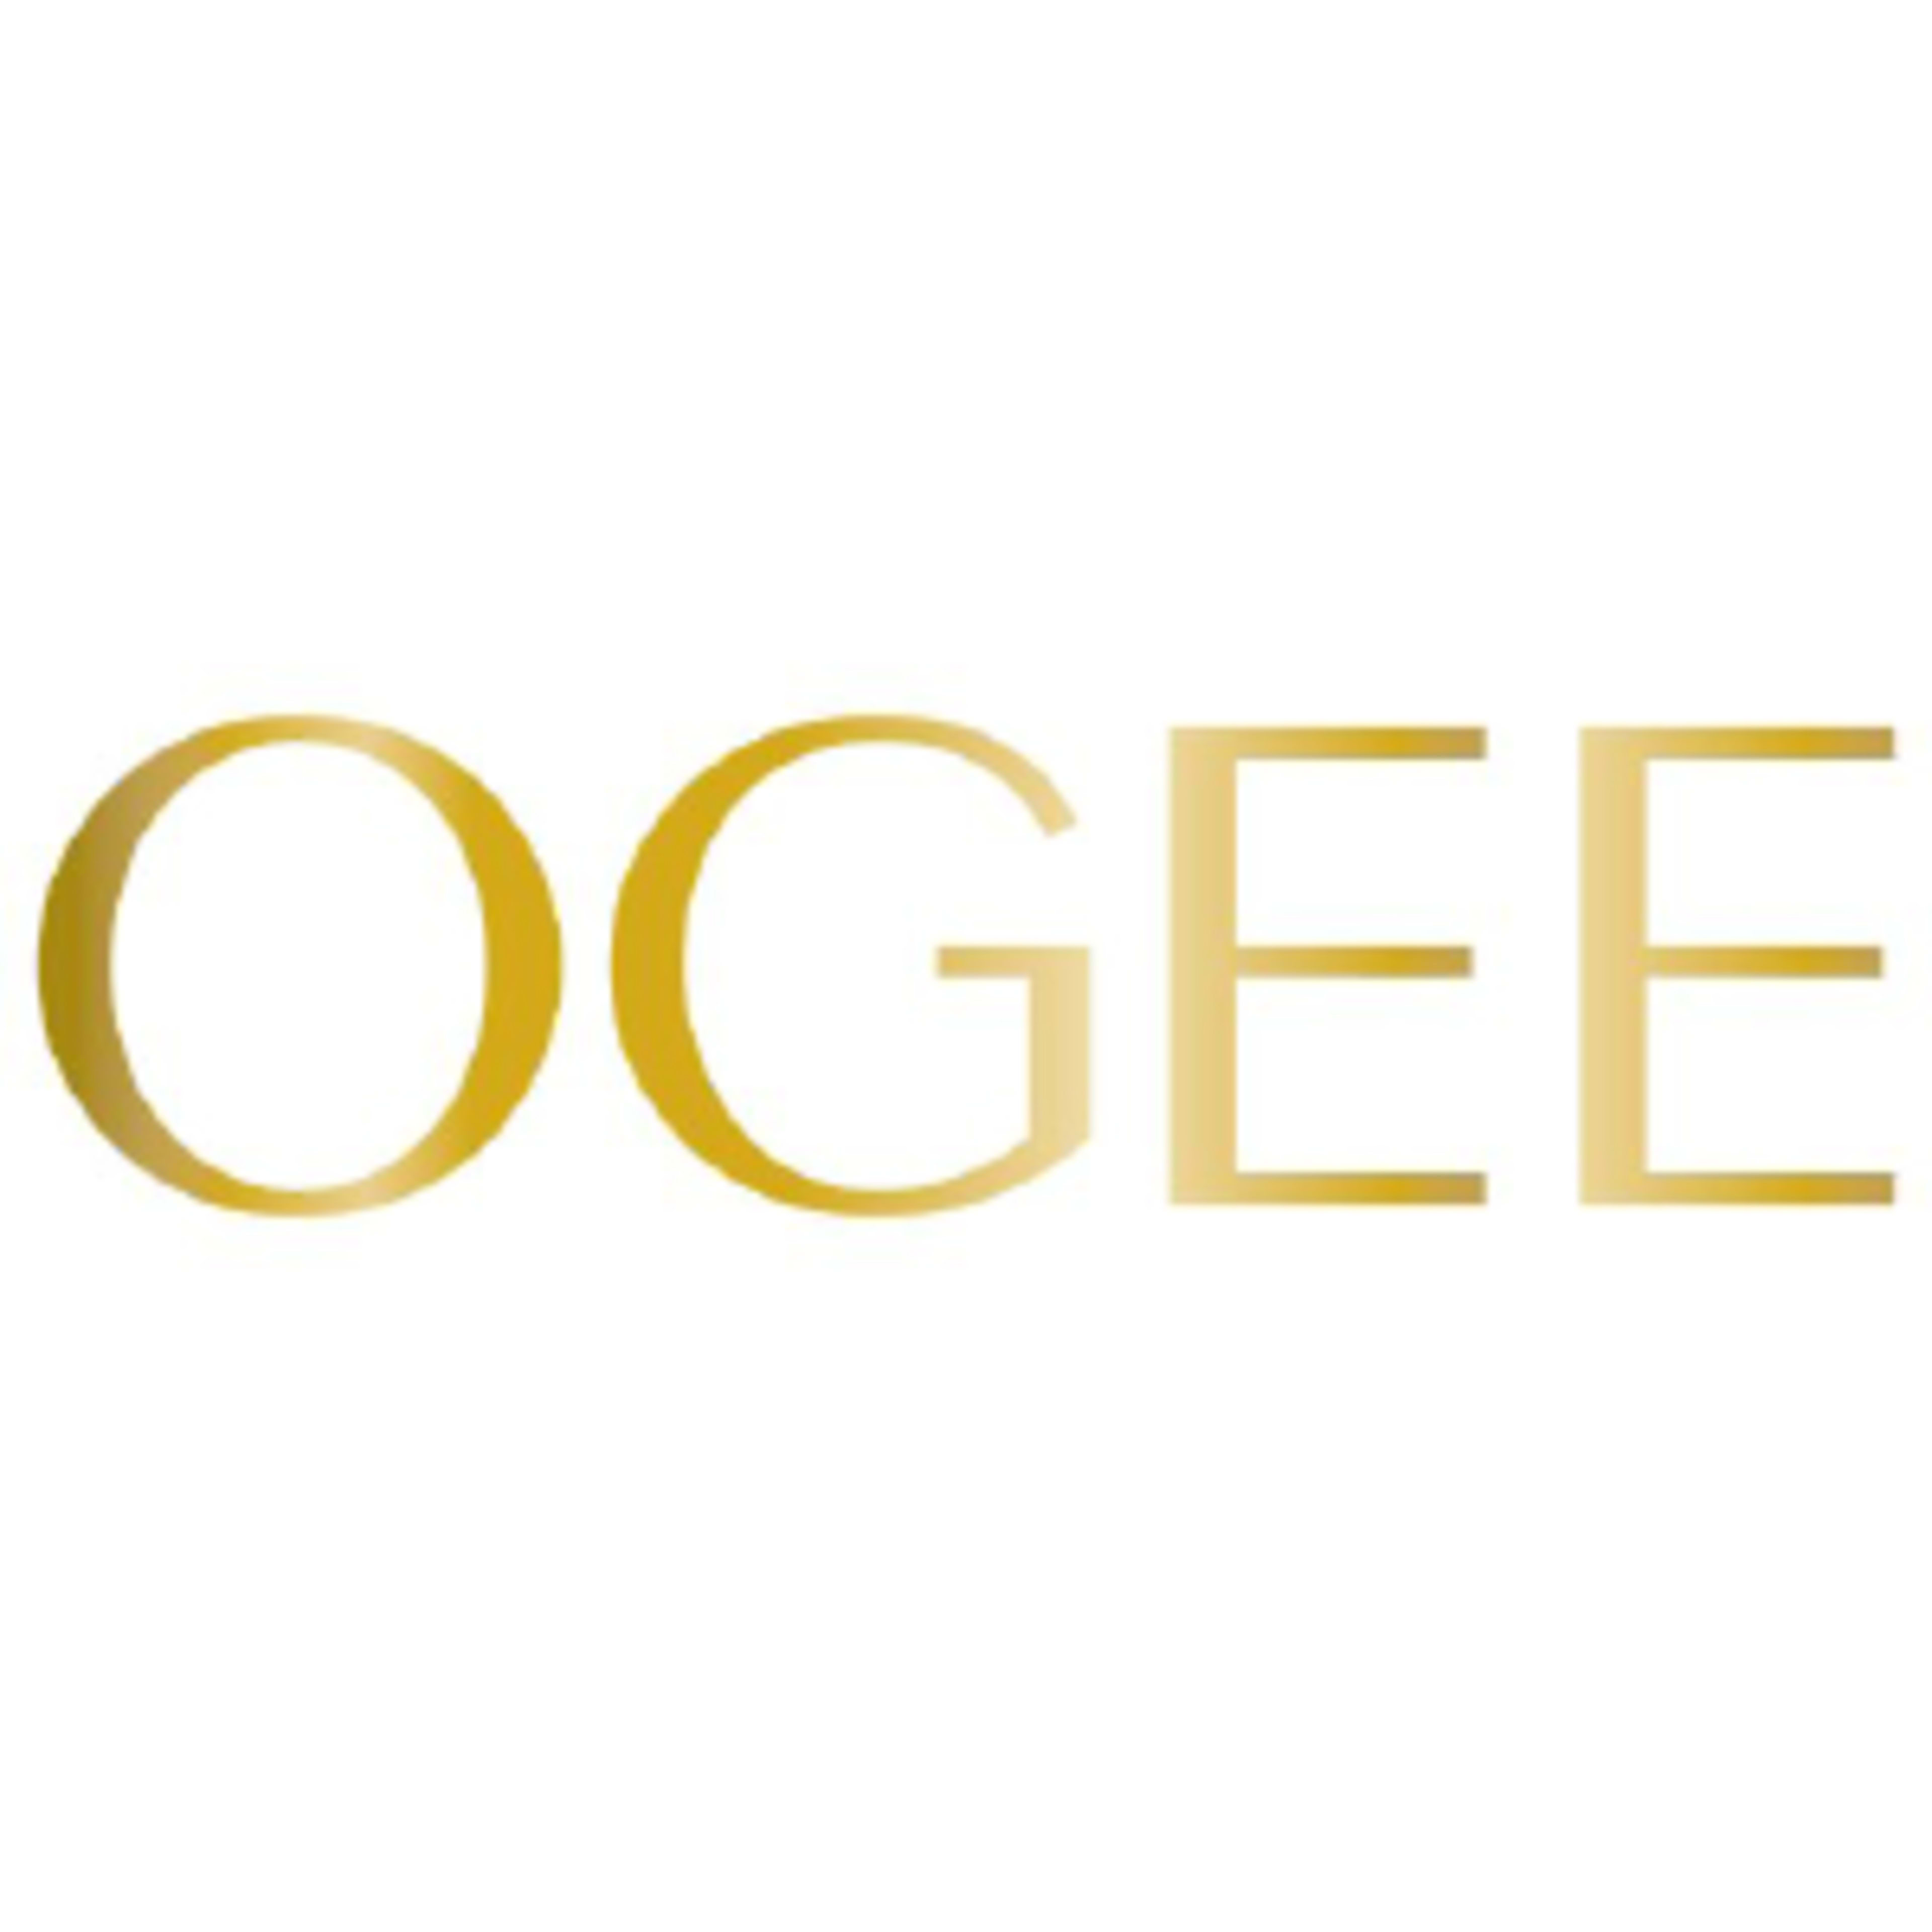 OgeeCode